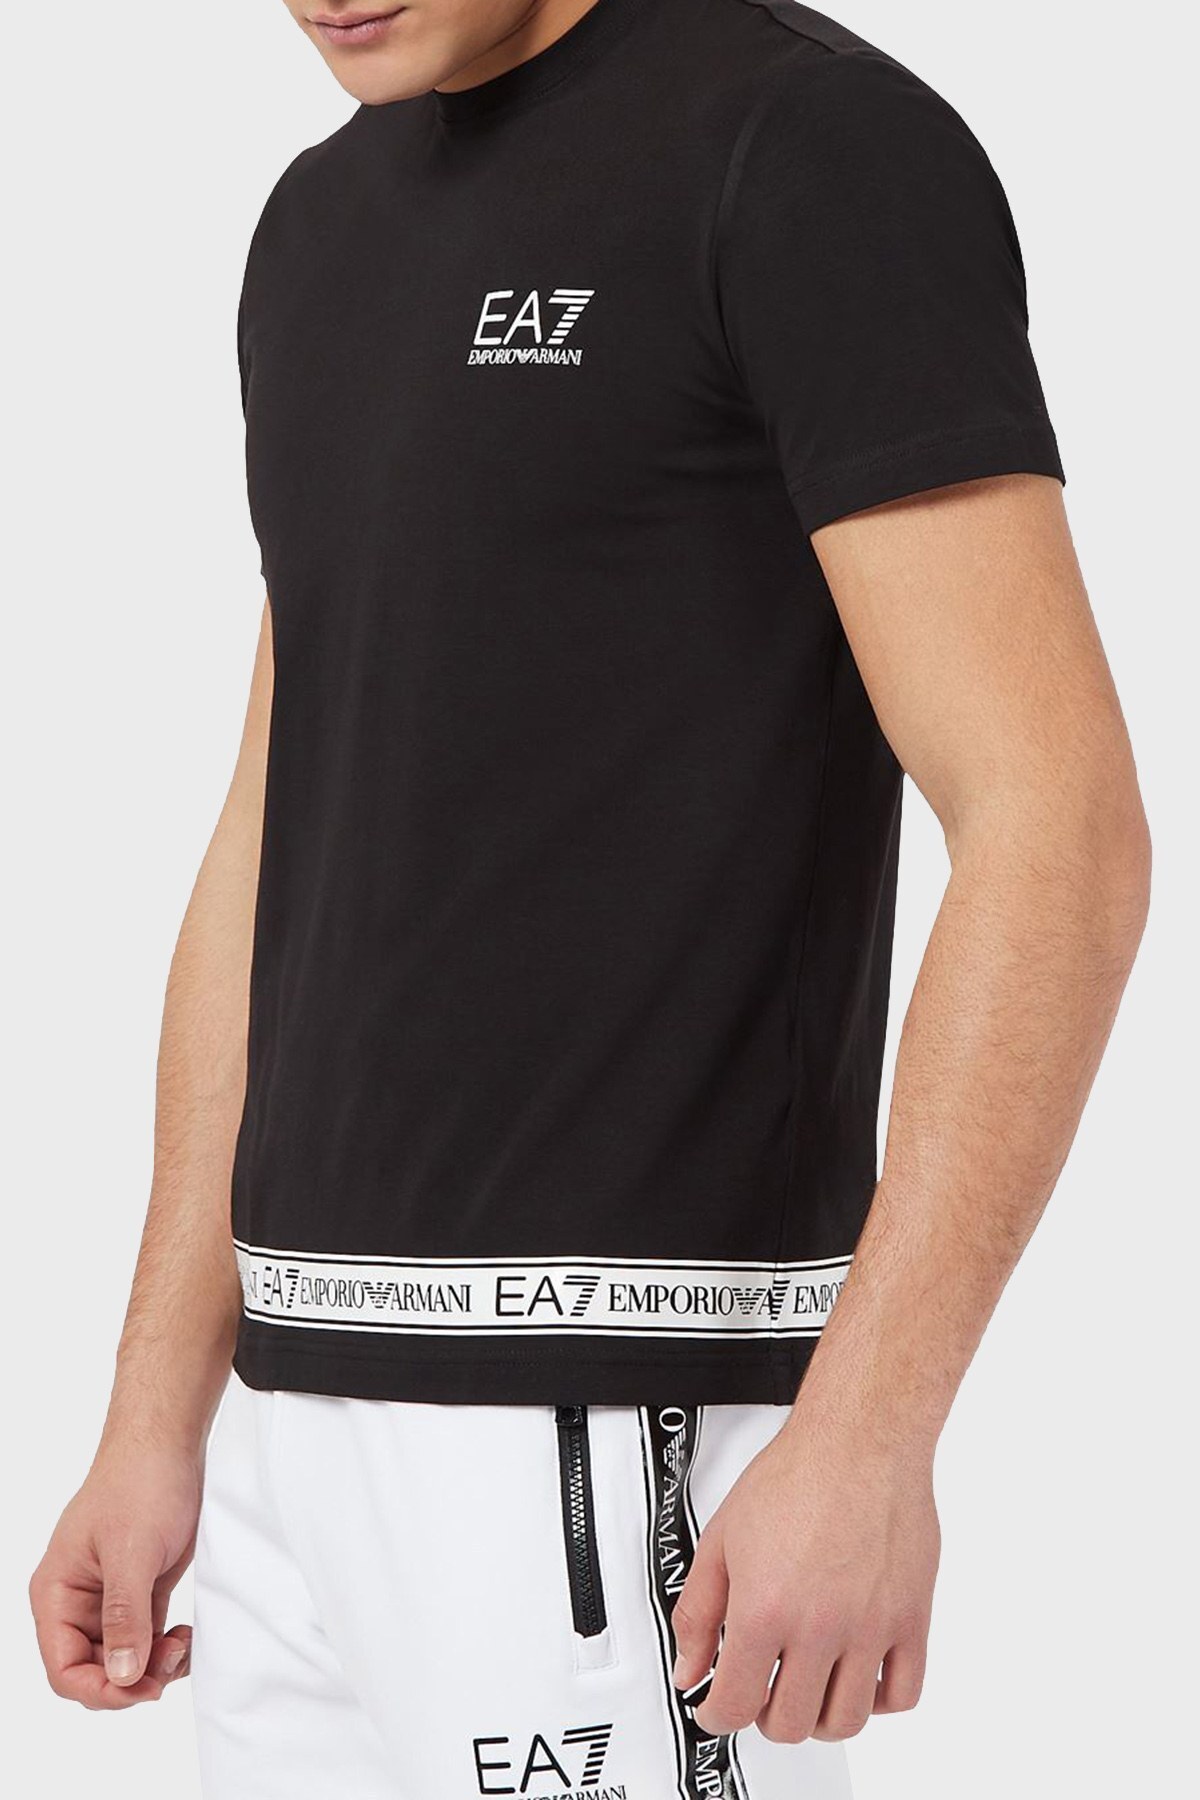 EA7 Logo Baskılı Bisiklet Yaka Pamuklu Erkek T Shirt S 3KPT05 PJ03Z 1200 SİYAH